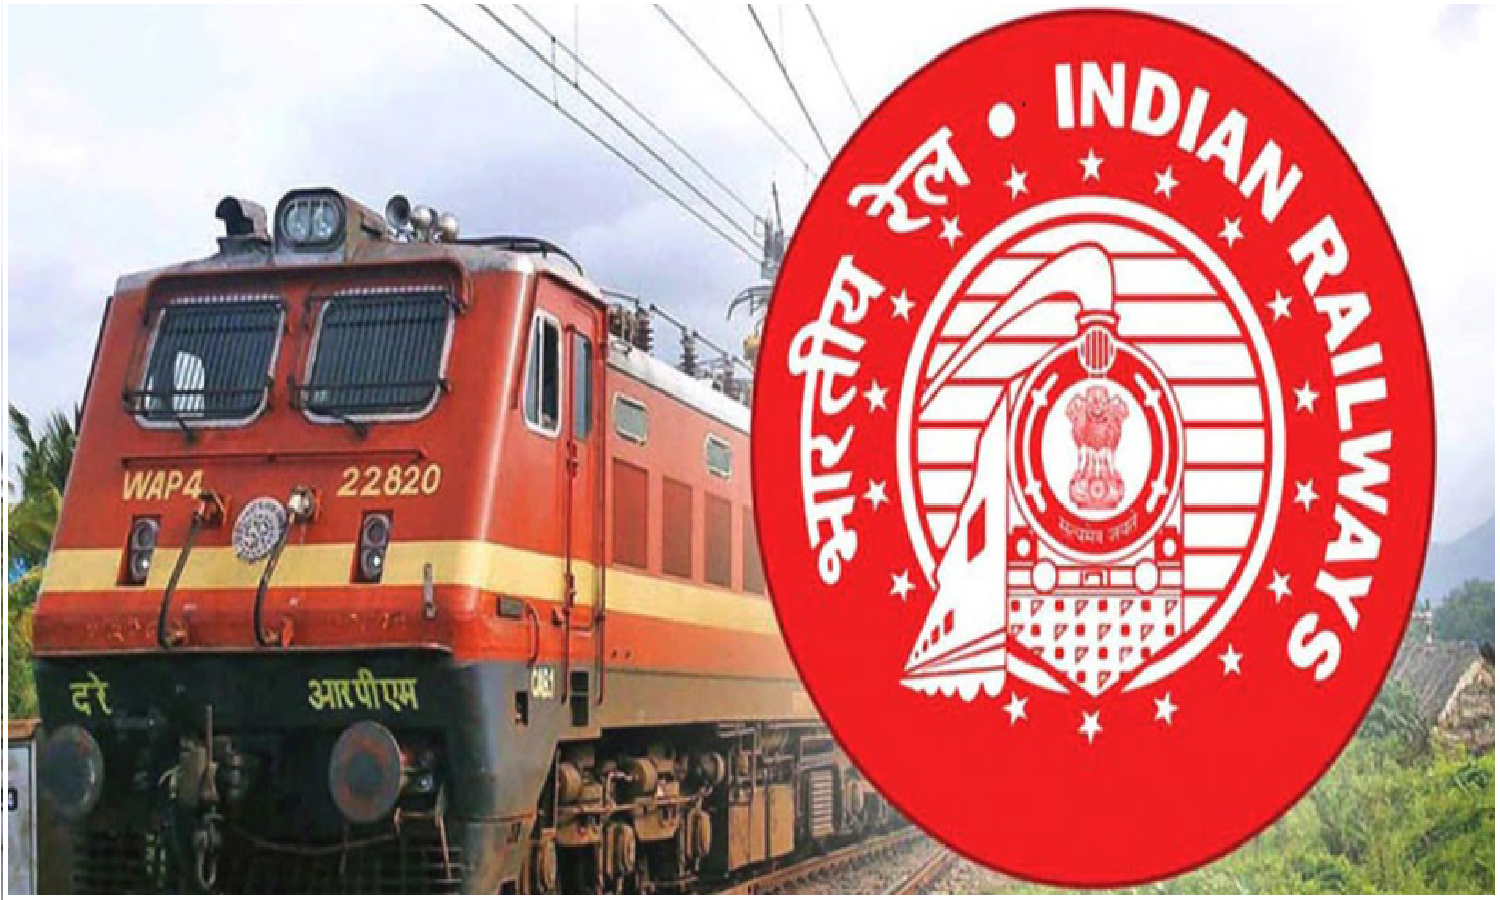 Sarkari Naukri: रेलवे में 10वीं पास उम्मीदवारो के लिए नौकरी पाने का आखिरी मौका आज